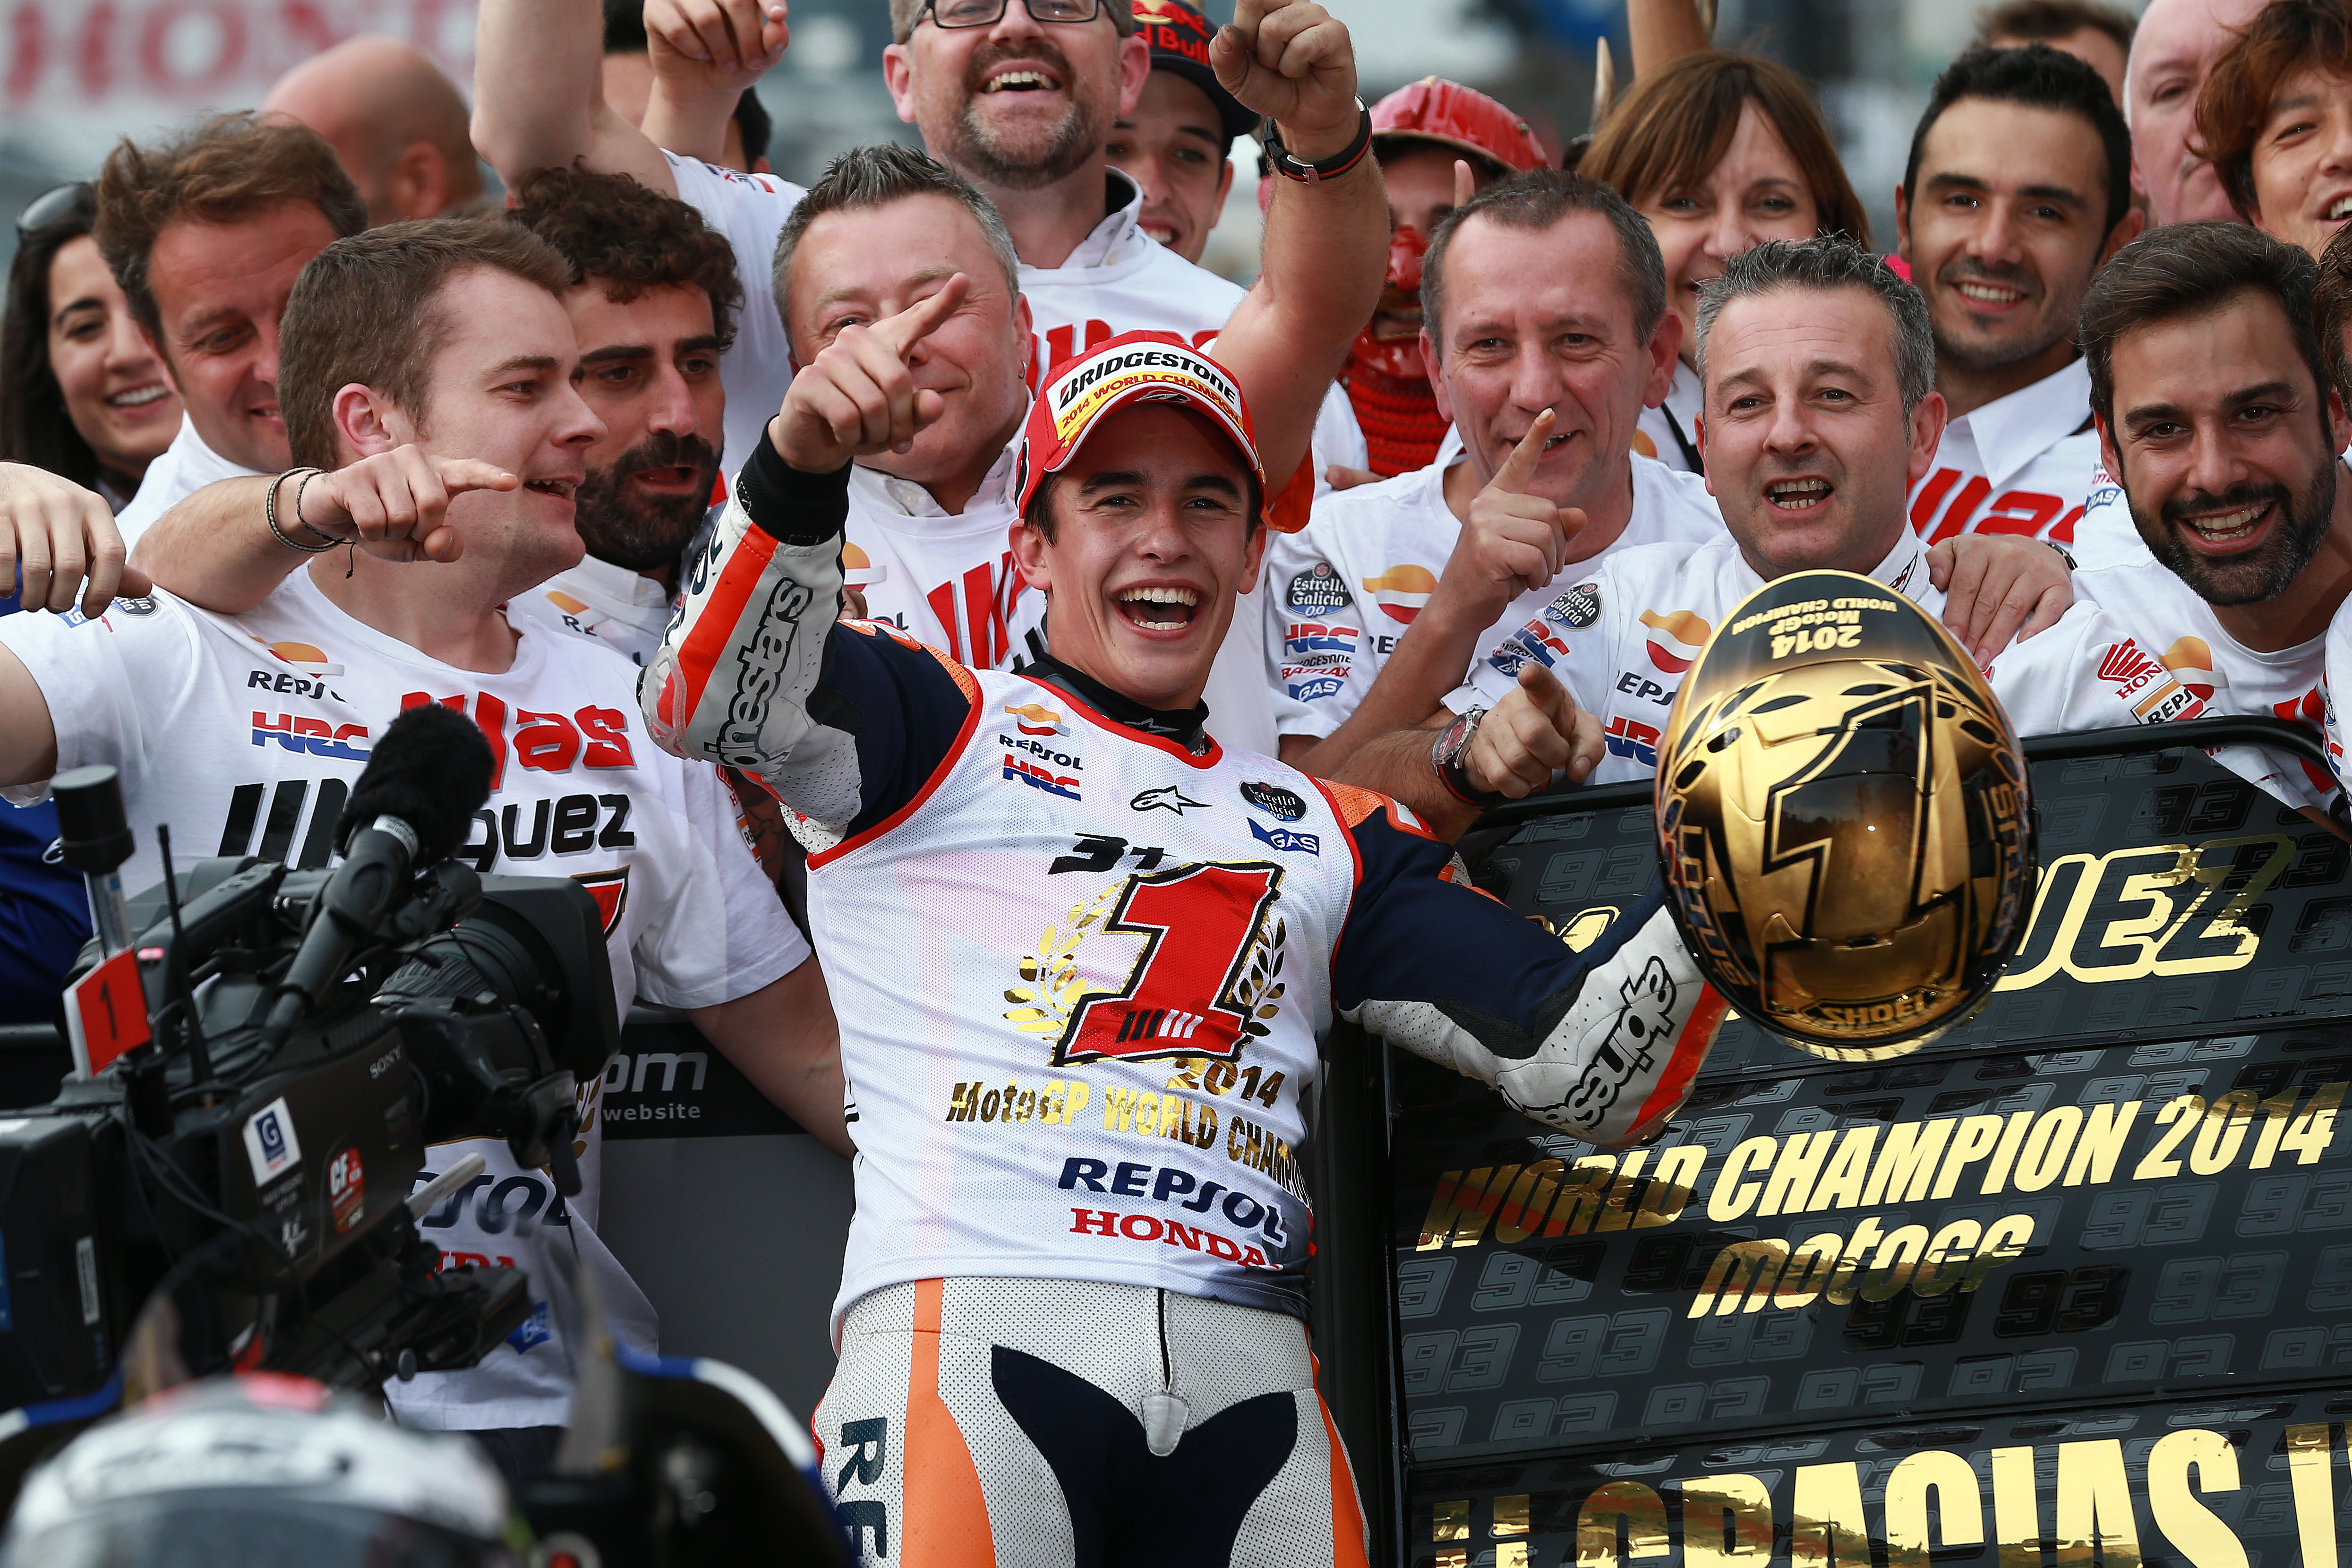 Marquez secures 2014 MotoGP World Championship title